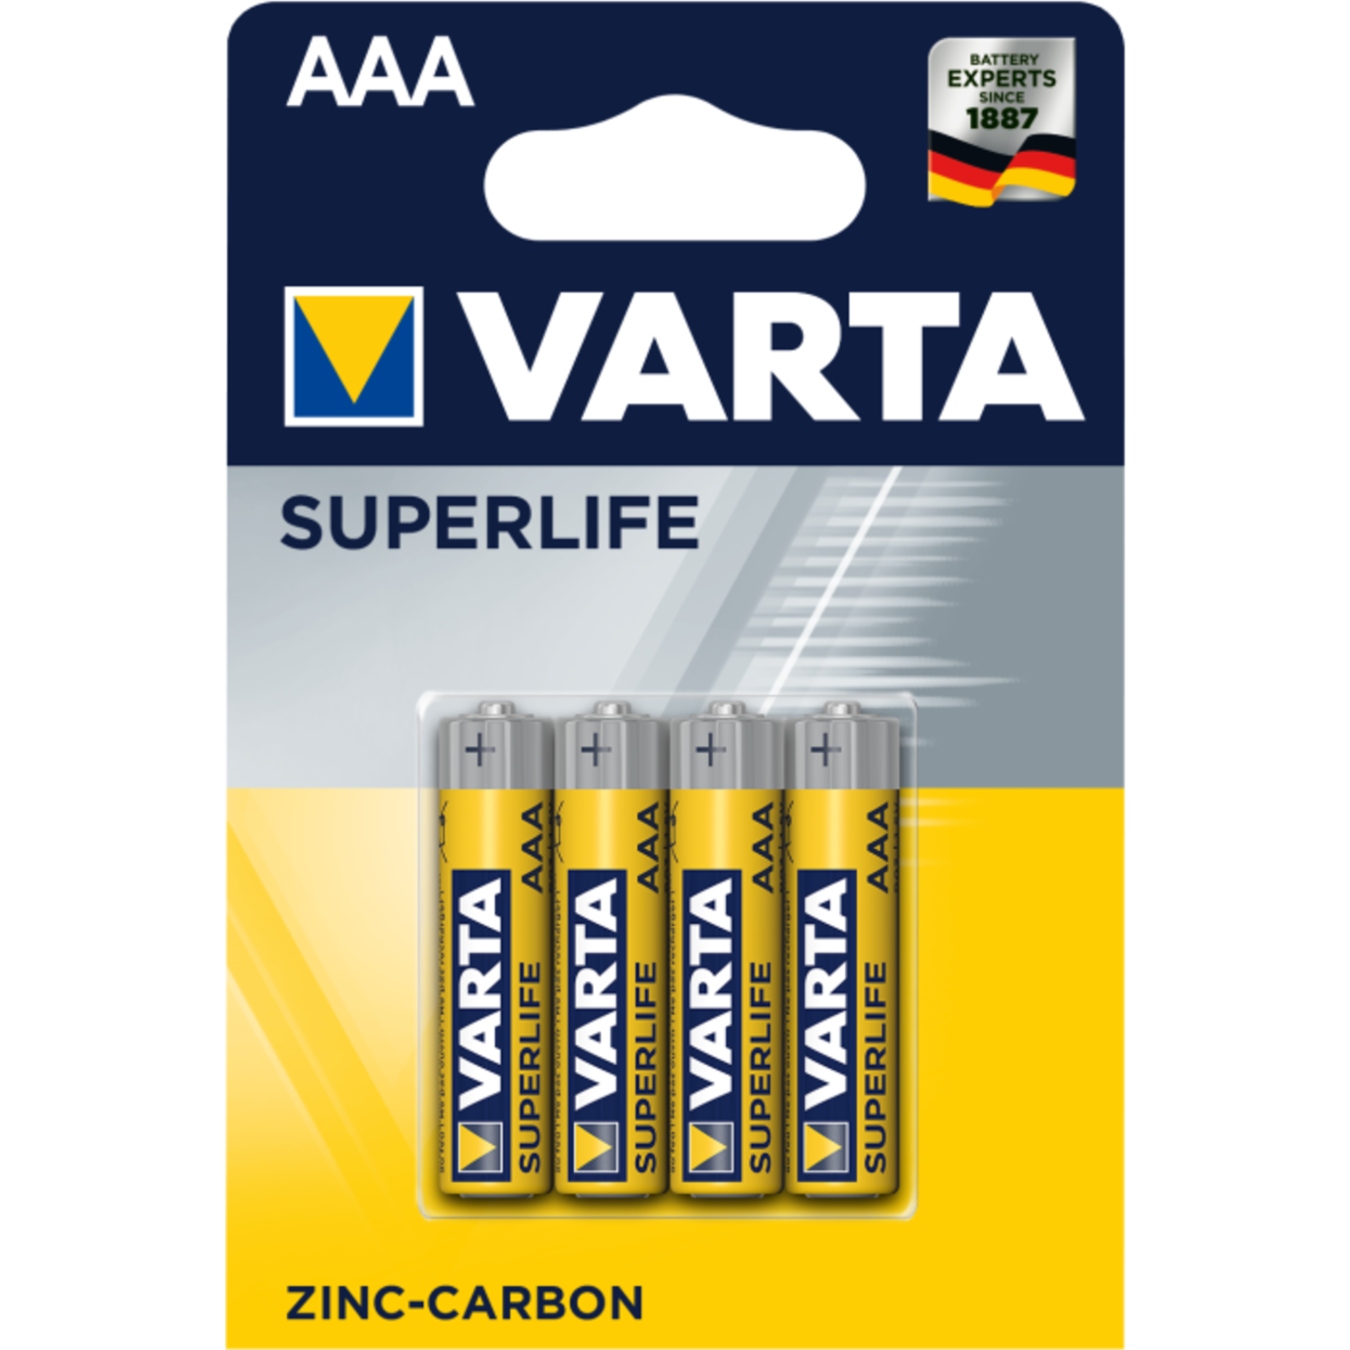 Varta Superlife AAA BLI4 battery 2